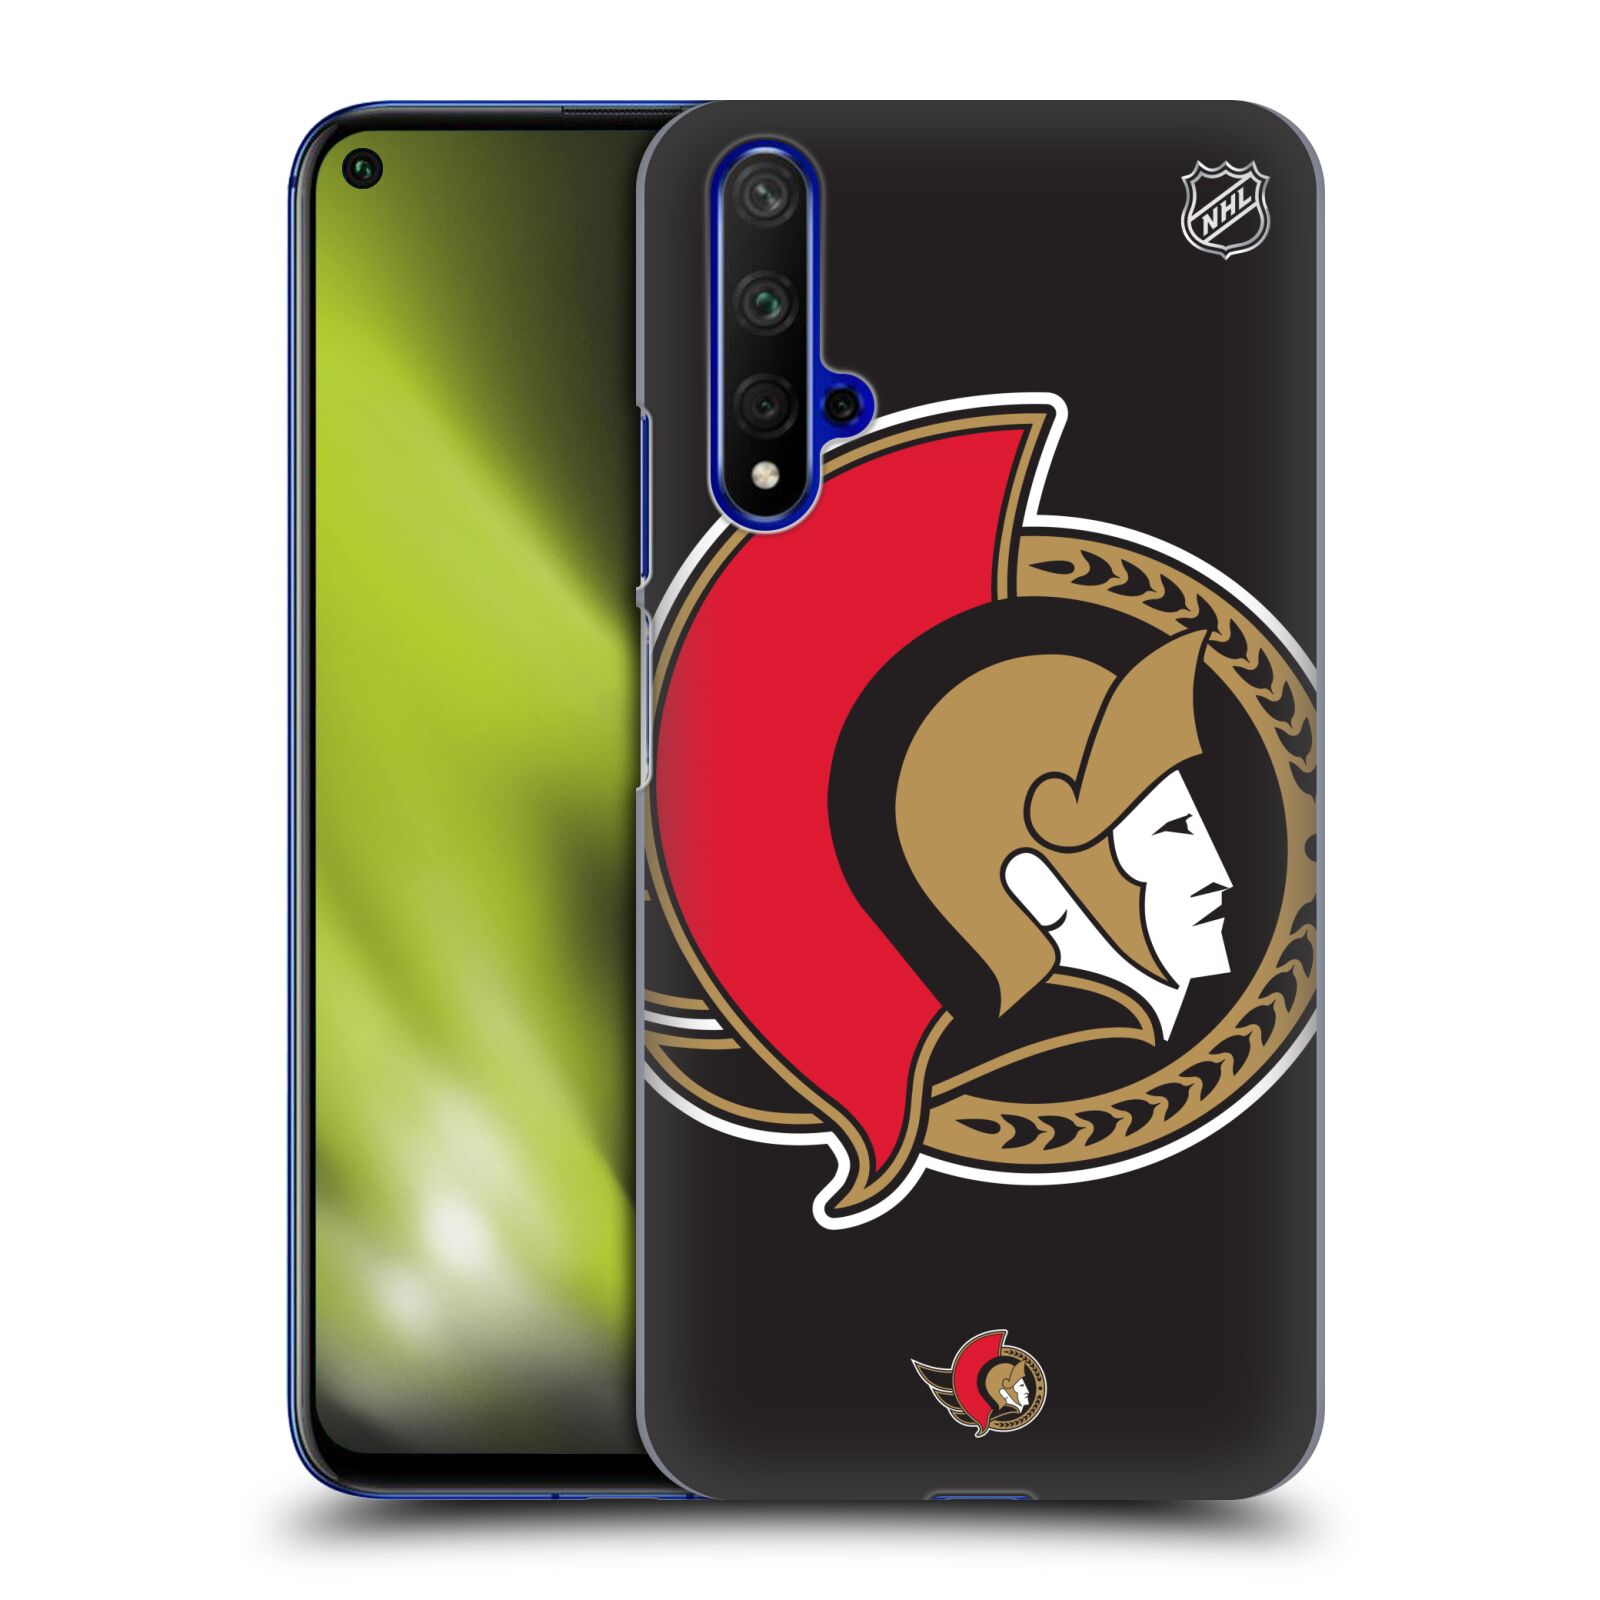 Pouzdro na mobil HONOR 20 - HEAD CASE - Hokej NHL - Ottawa Senators - Velký znak